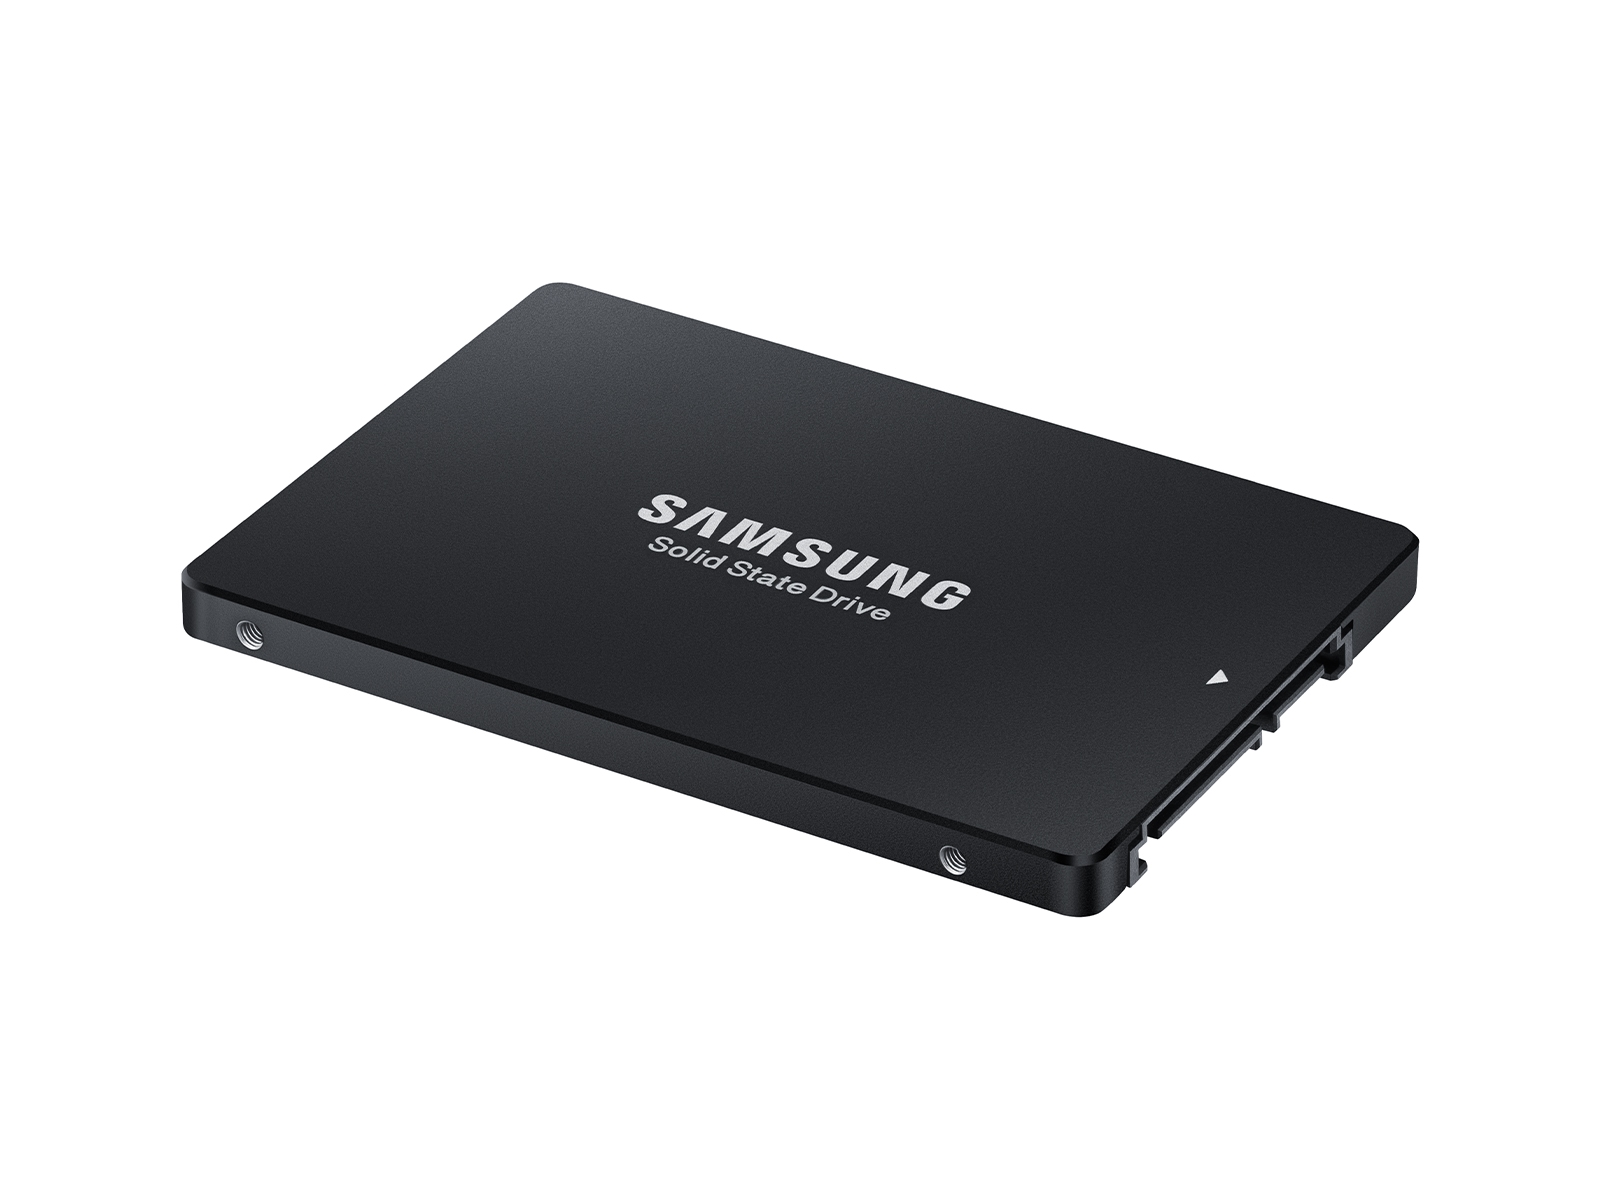 Samsung PM893 MZ7L3480HCHQAD3 - SSD - 480 GB - SATA 6Gb/s - DELL OEM Brand  New